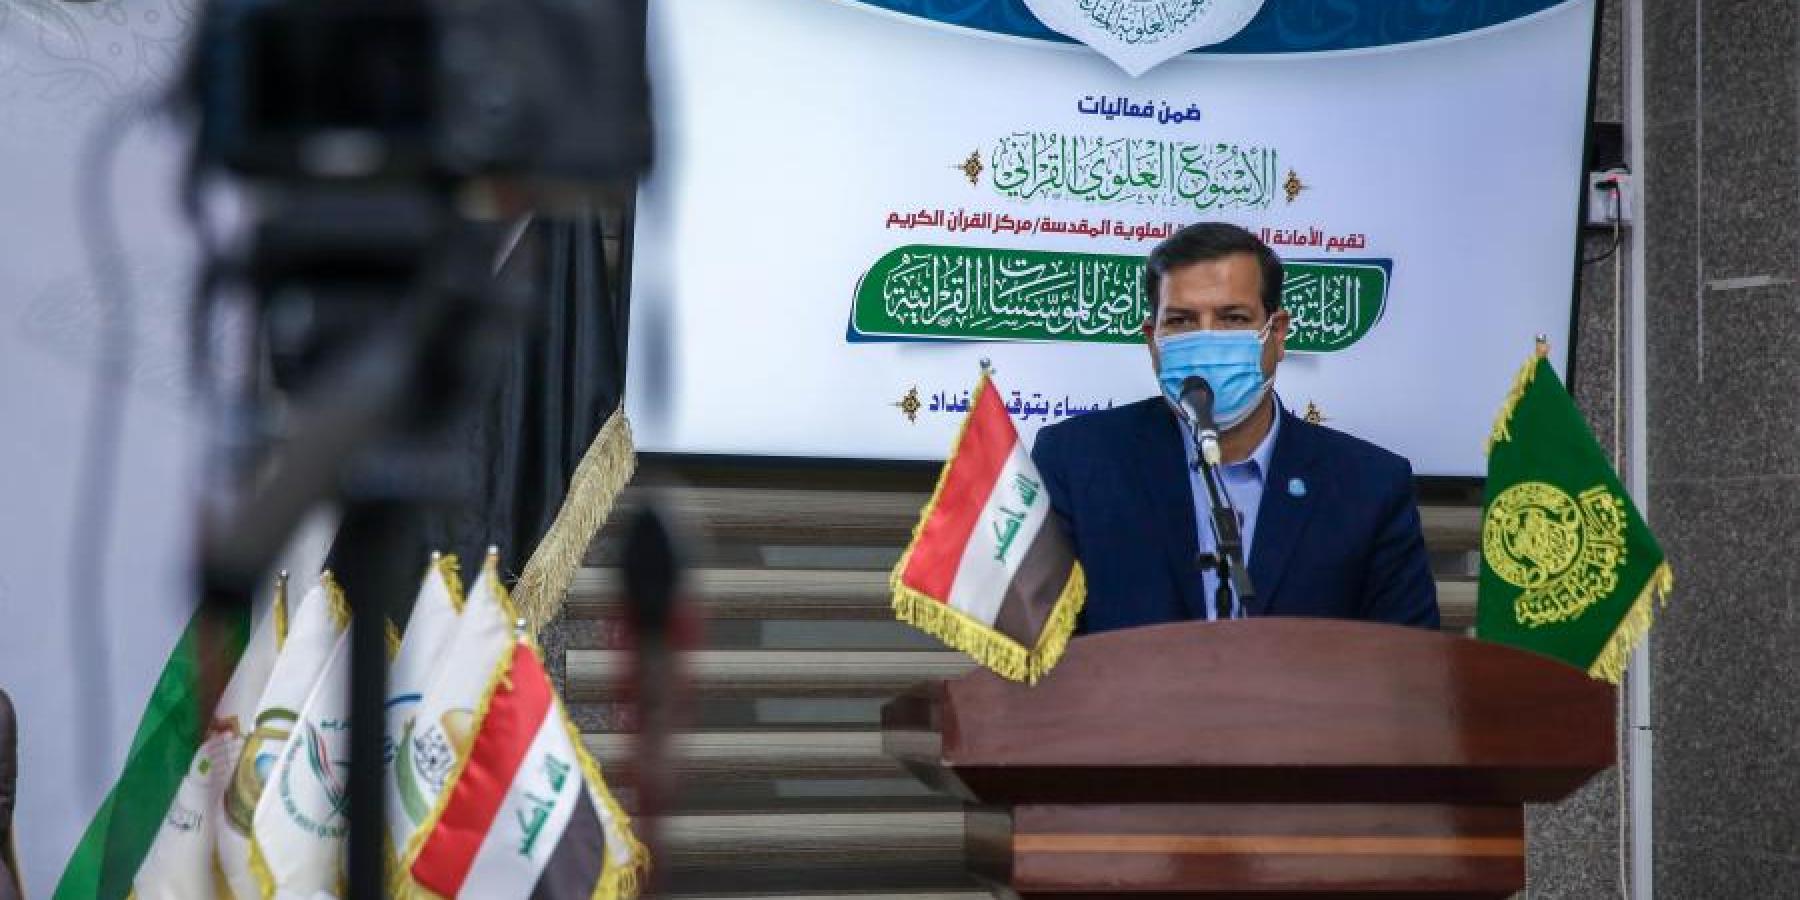 انطلاق أعمال الملتقى الوطني الافتراضي للمؤسسات القرآنية في العراق من رحاب مرقد أمير المؤمنين (عليه السلام)